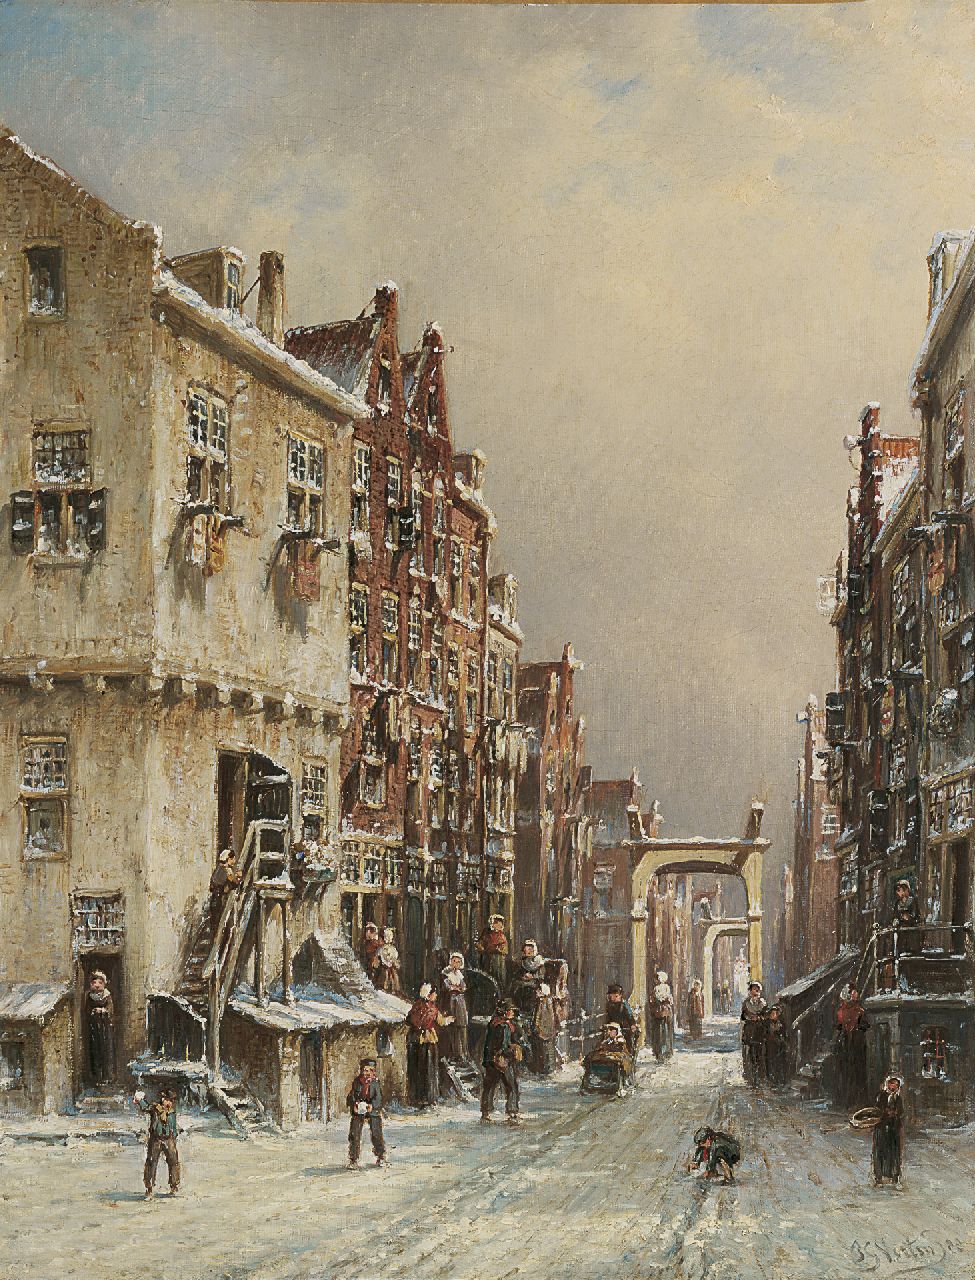 Vertin P.G.  | Petrus Gerardus Vertin, Drukbevolkt Hollands straatje in de winter, olieverf op doek 45,5 x 35,1 cm, gesigneerd rechtsonder en gedateerd '88